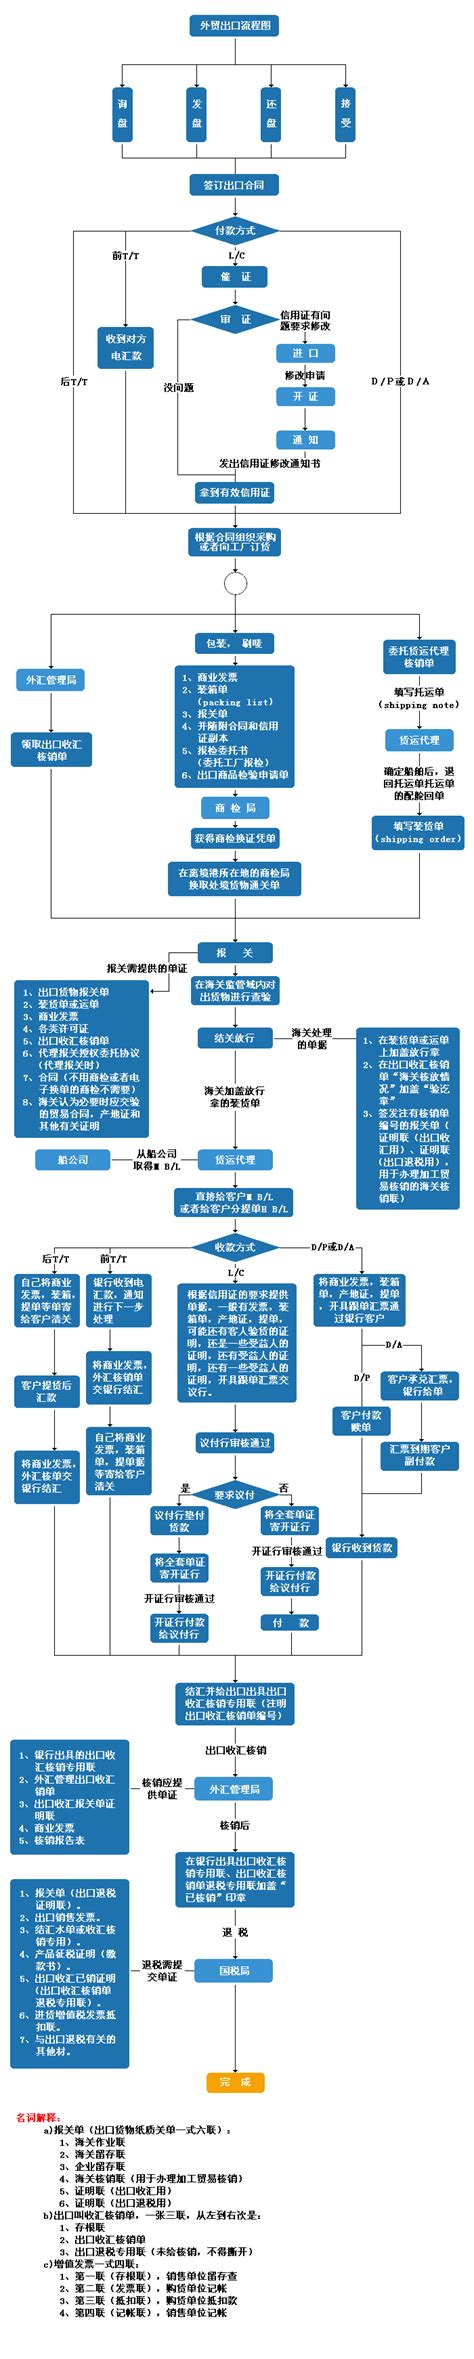 电商运营流程图模板分享，运营的核心都在这里了，快来拿走吧 - 百因必有果的个人空间 - OSCHINA - 中文开源技术交流社区